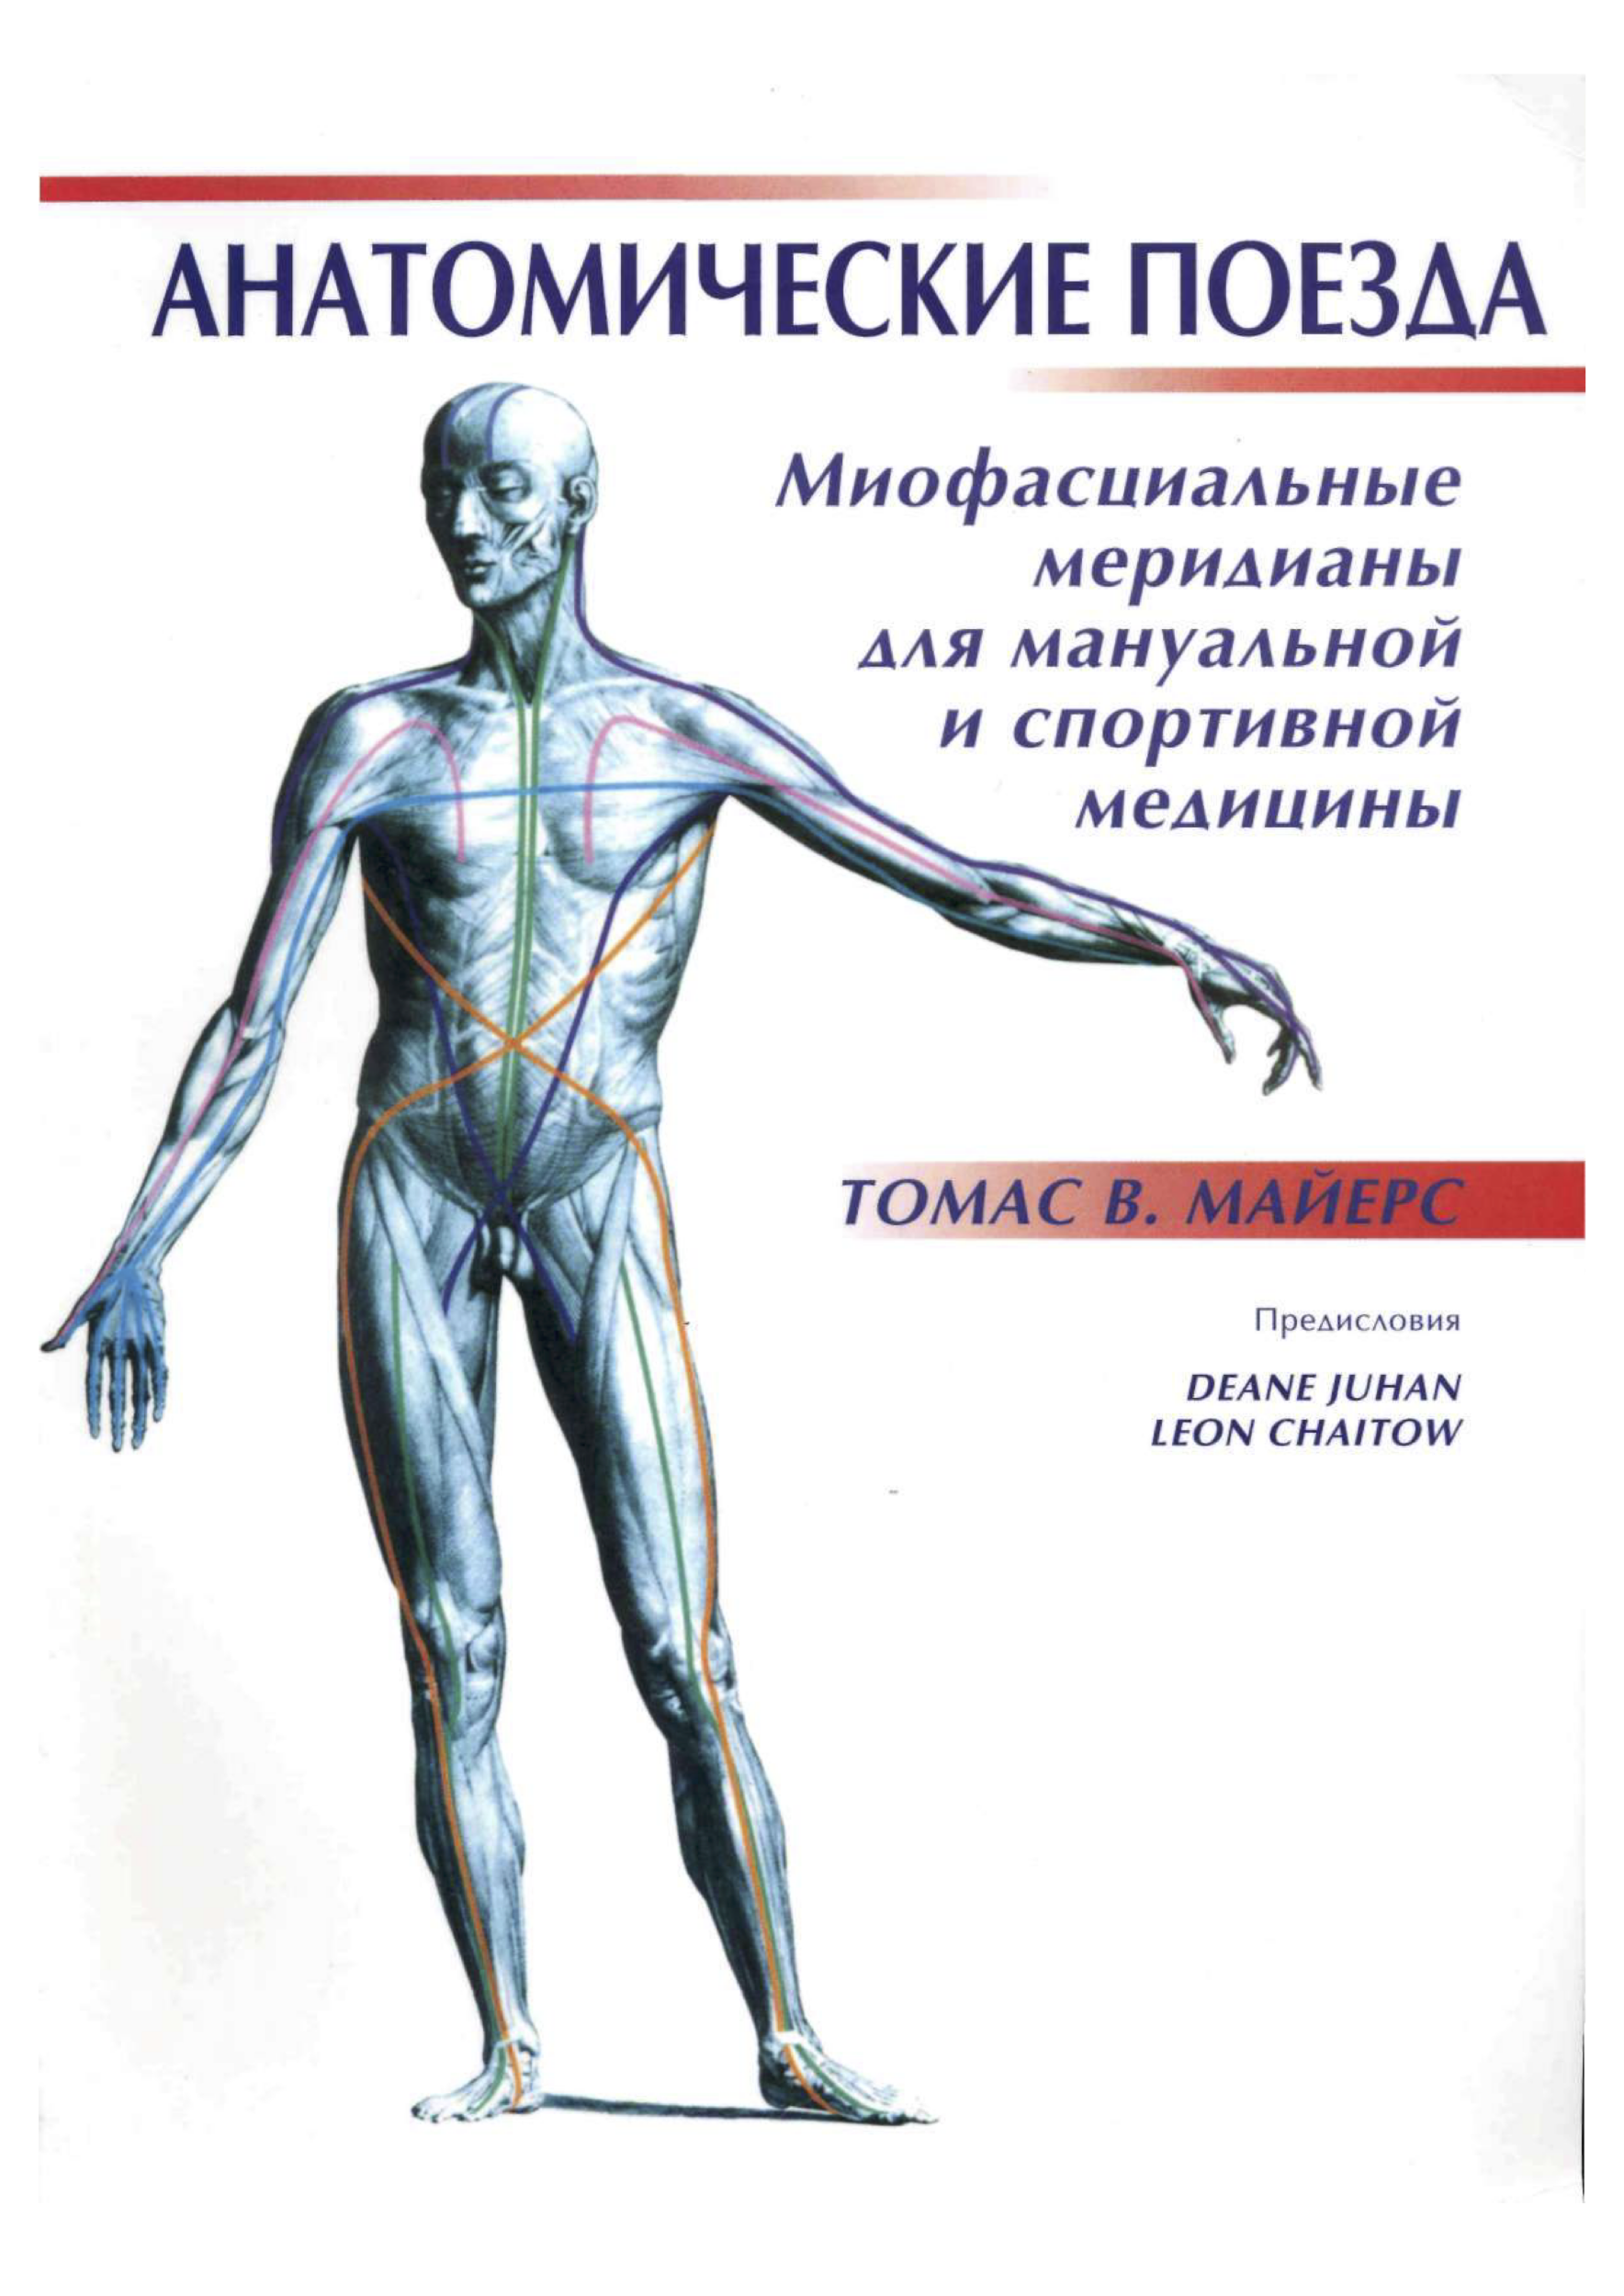 Анатомические поезда. Томас В. Майерс (2007)